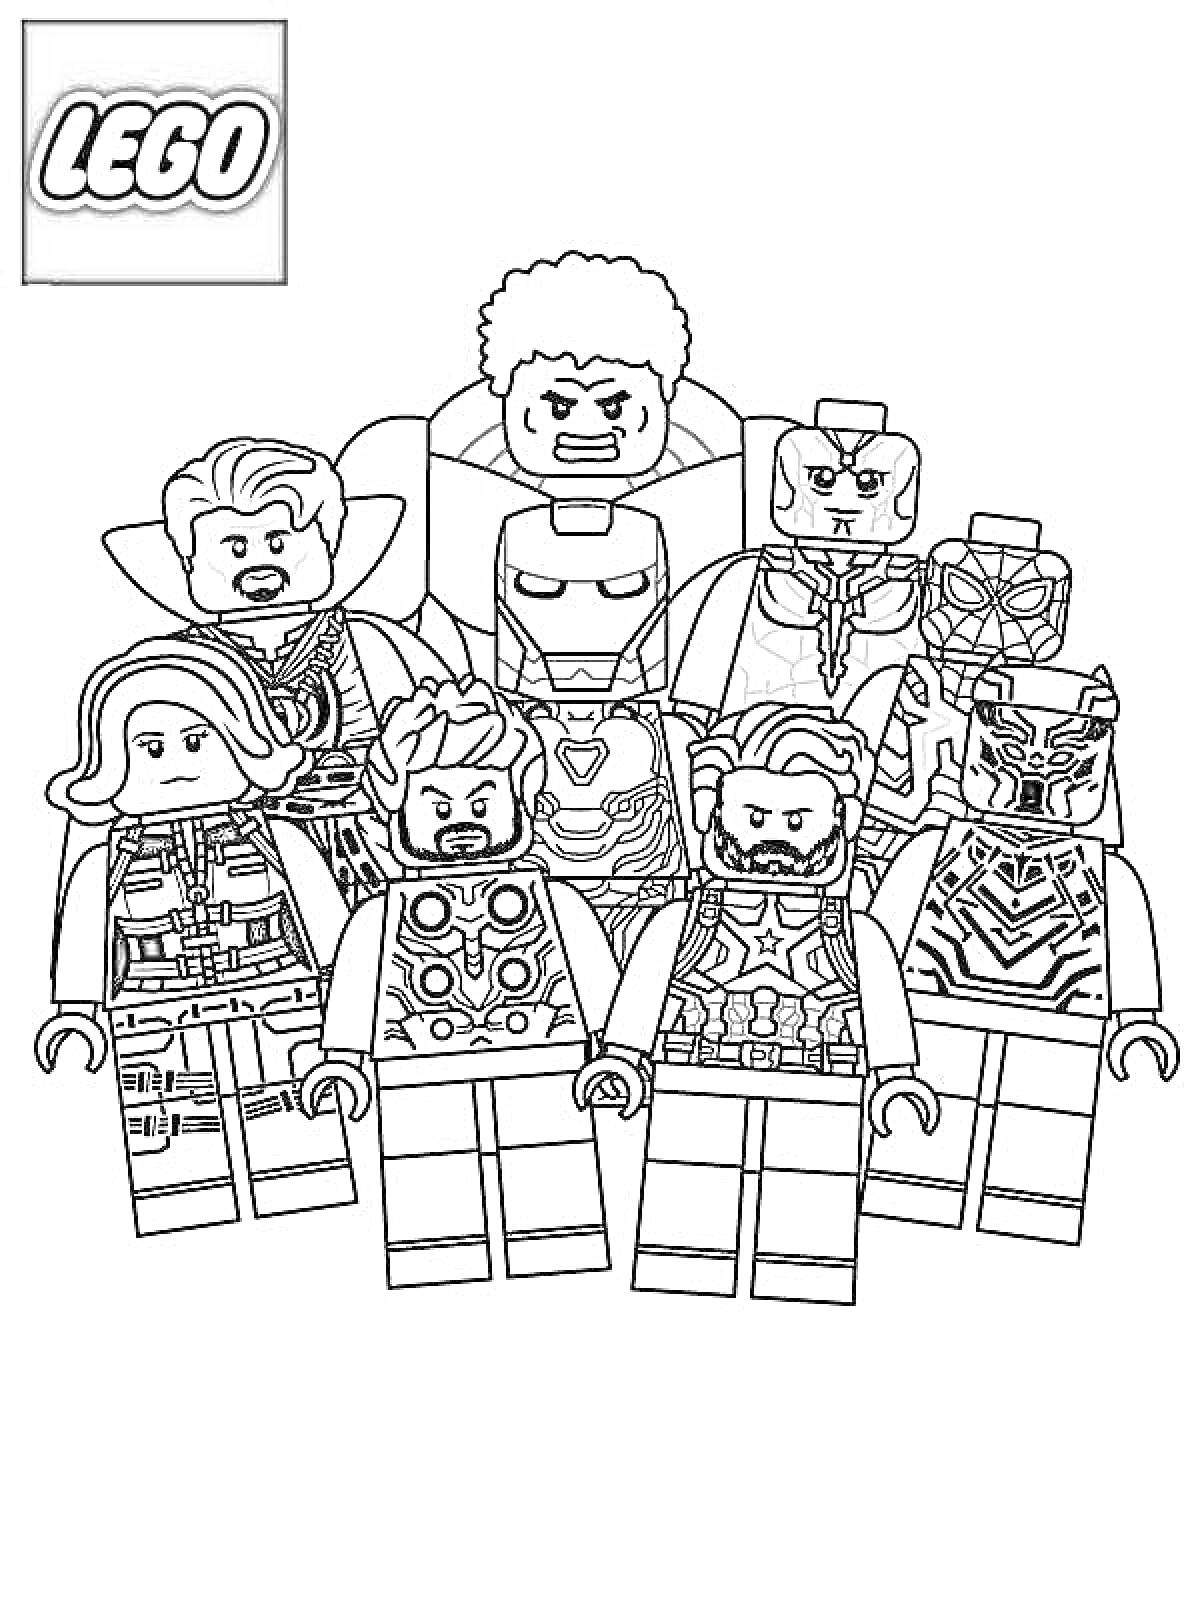 Раскраска Лего супергерои. На изображении представлены фигуры из серии Лего, воплощающие героев в стиле LEGO: фигурки с деталями костюмов, шлемов и оружия.